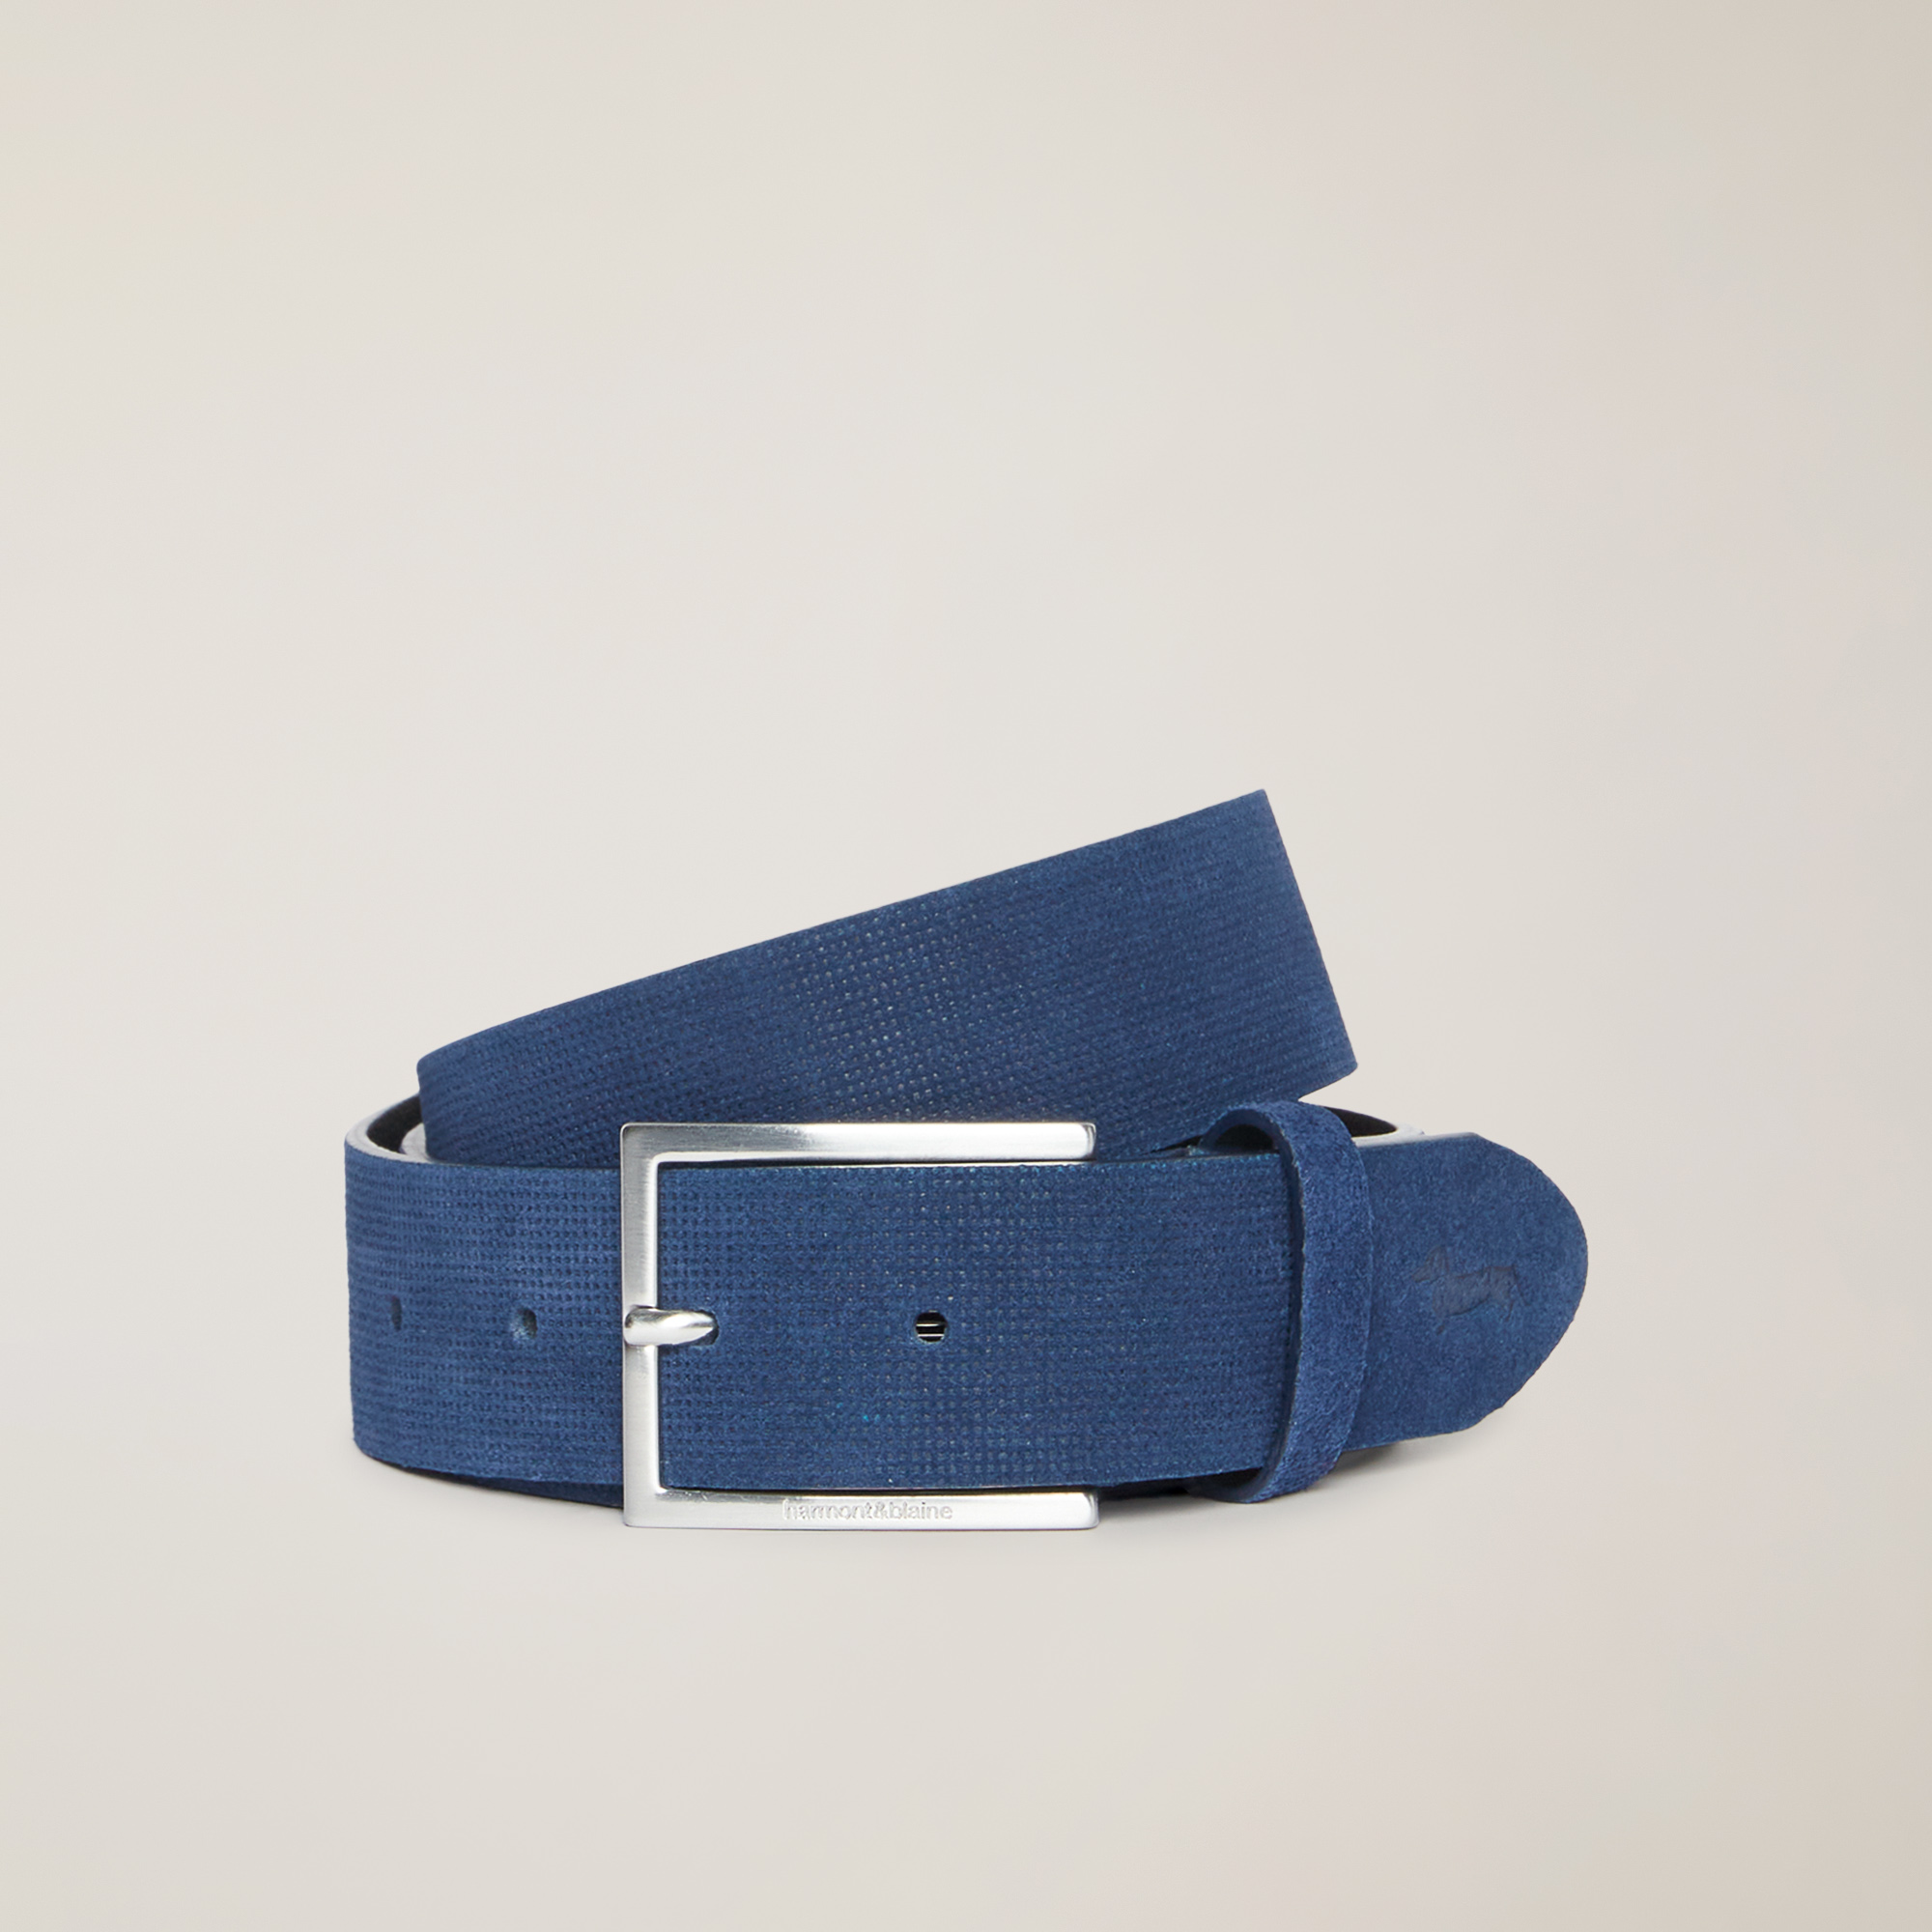 Cintura In Pelle, Blu, large image number 0